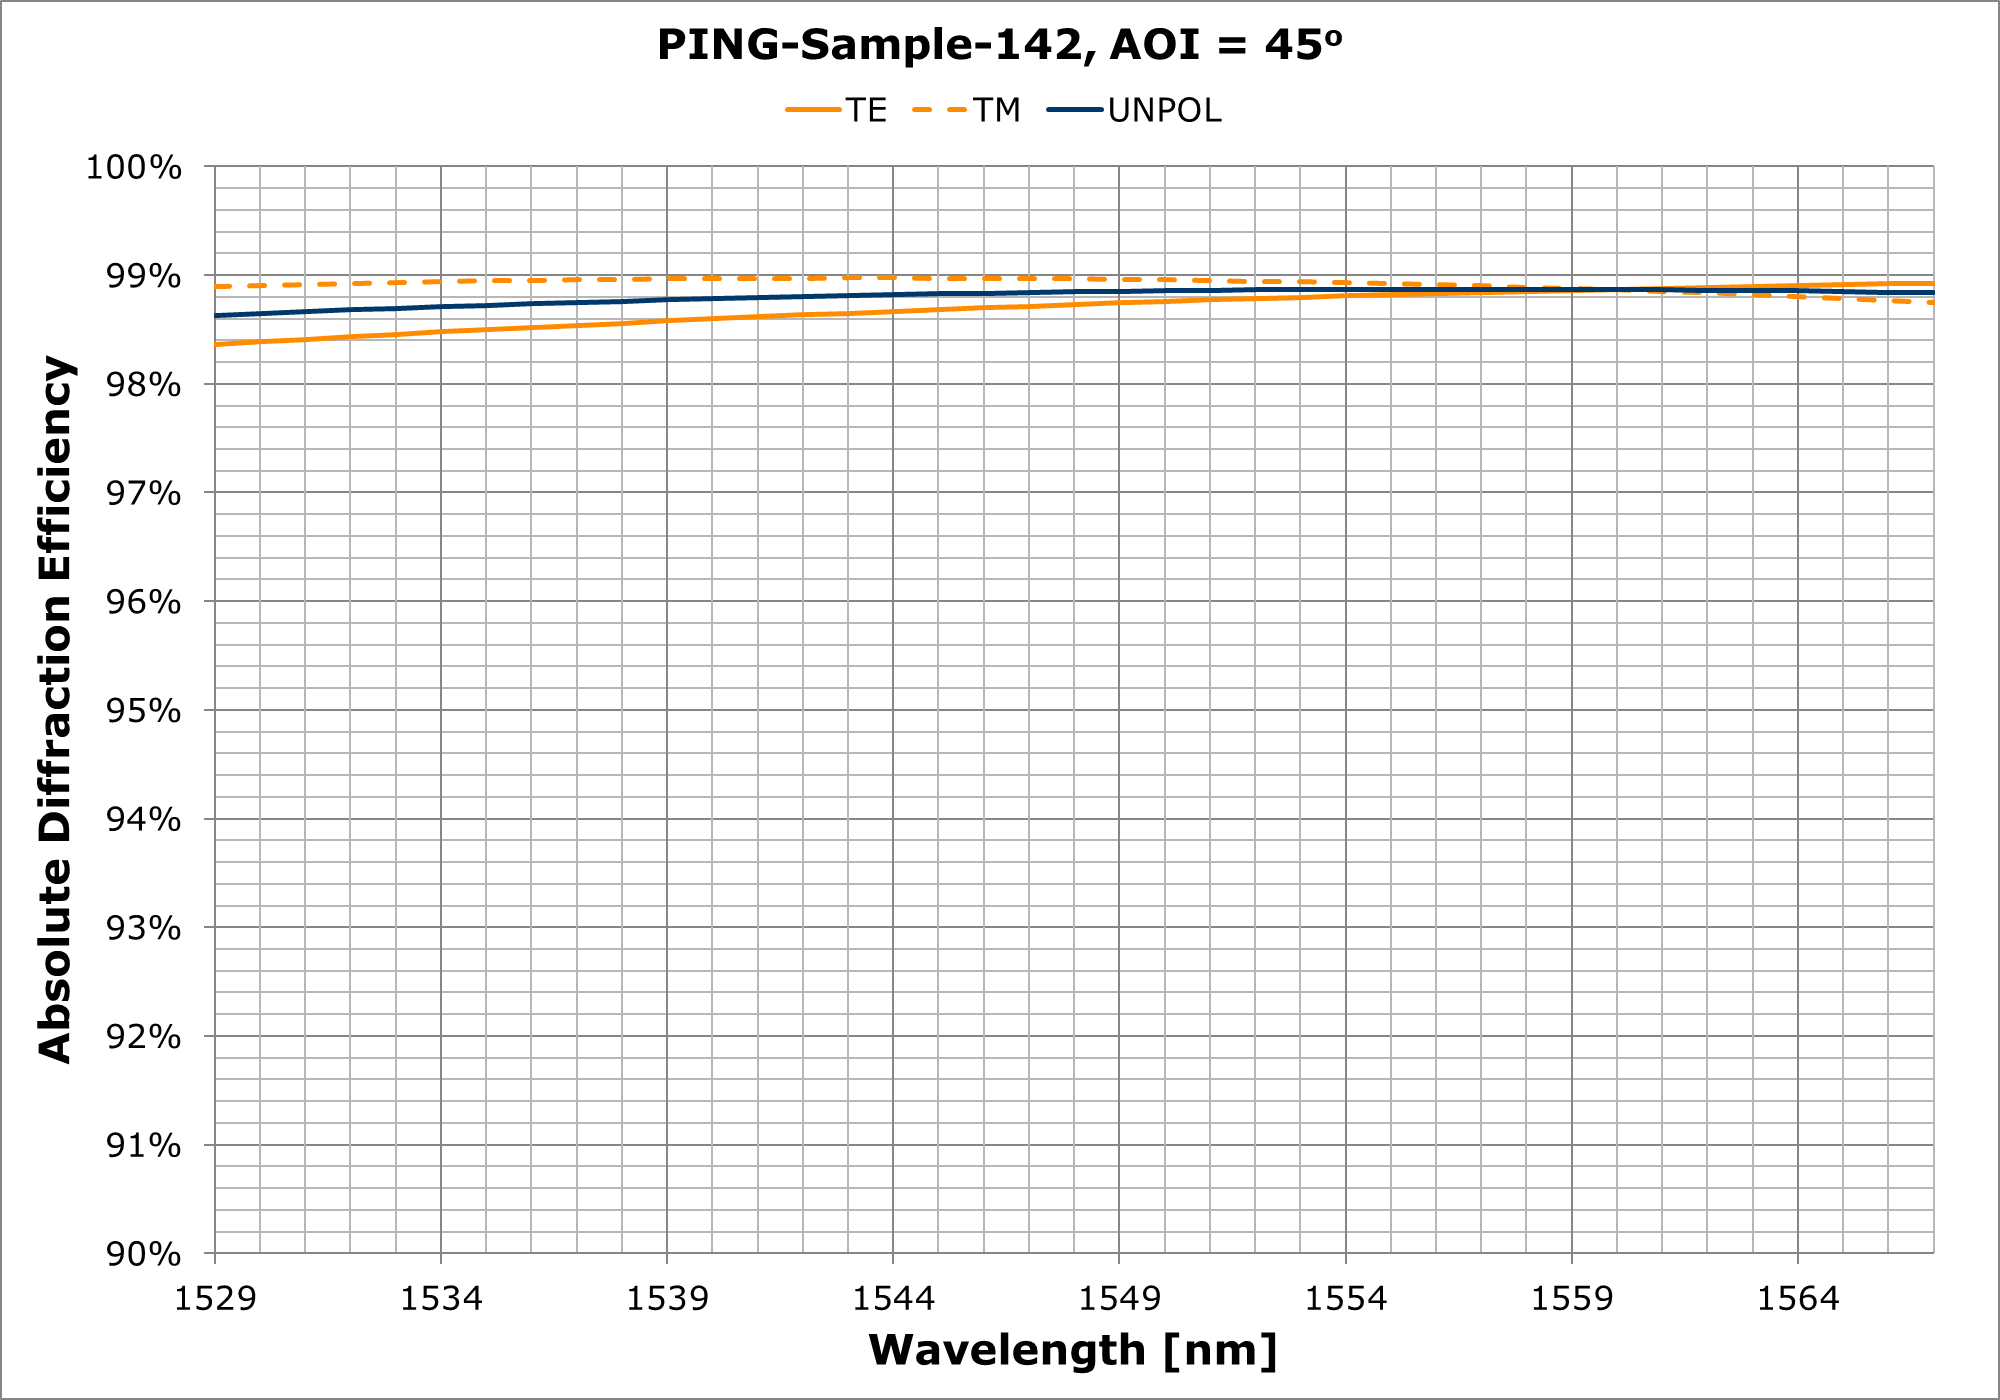 PING-Sample-142